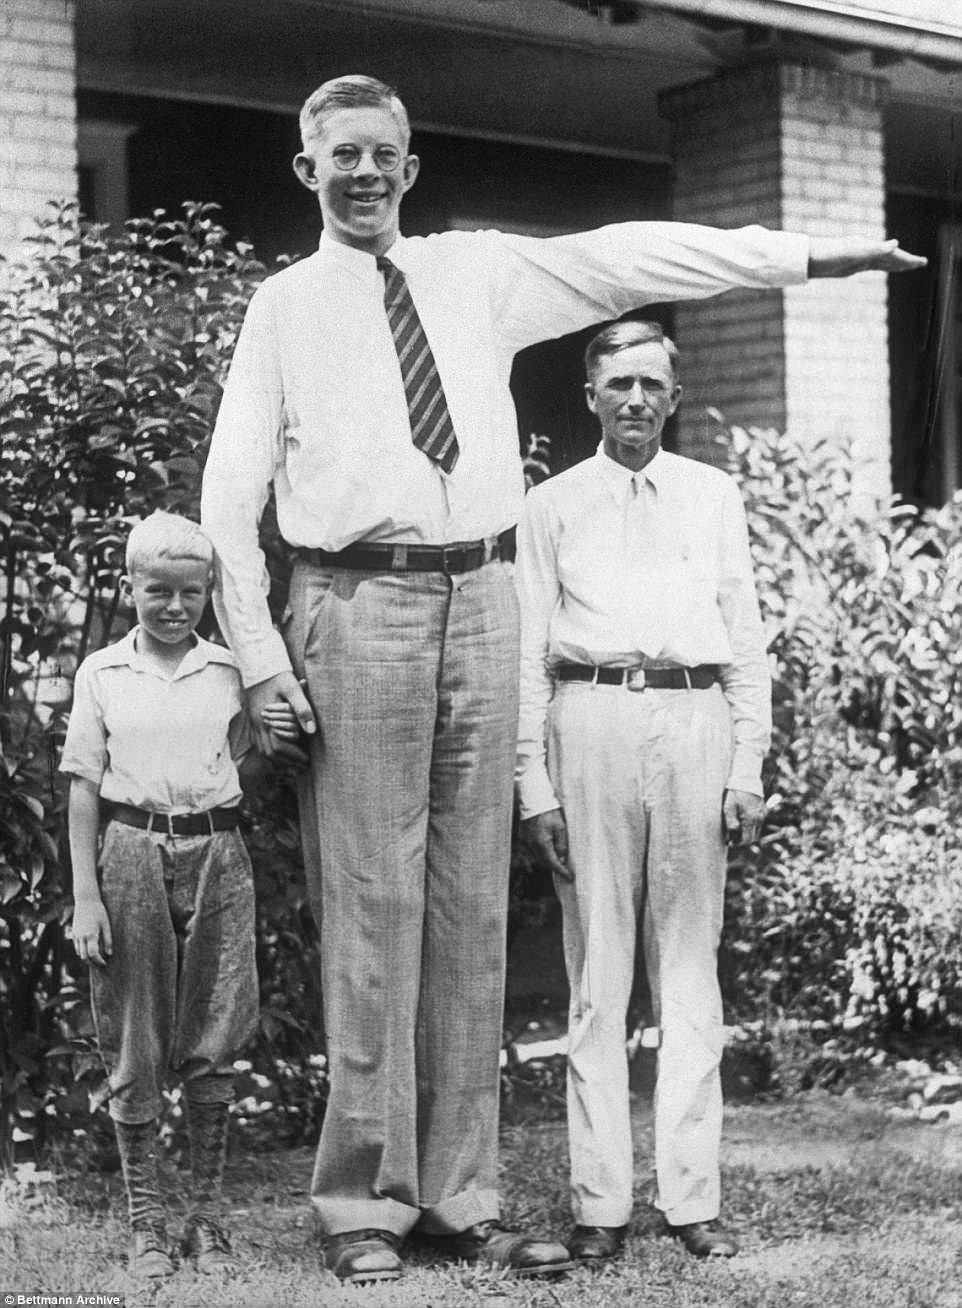 Robert mesurait 7 pieds 4 pouces et pesait 290 livres à l'âge de 13 ans. On le voit ici avec son père Harold et son frère Eugene, 9 ans.